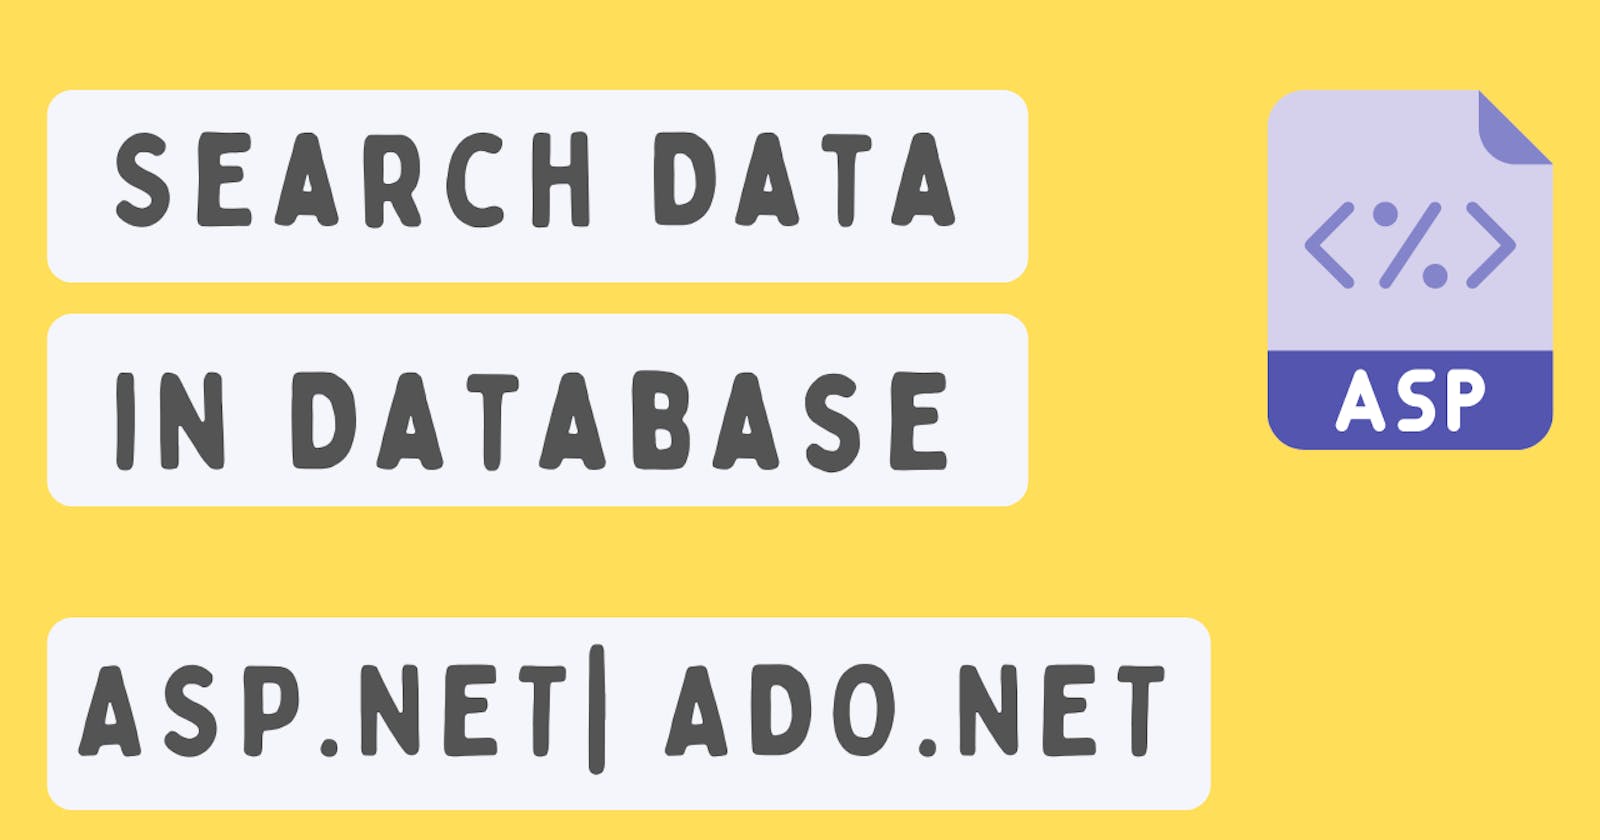 Search Data in Database | ASP.NET | ADO.NET